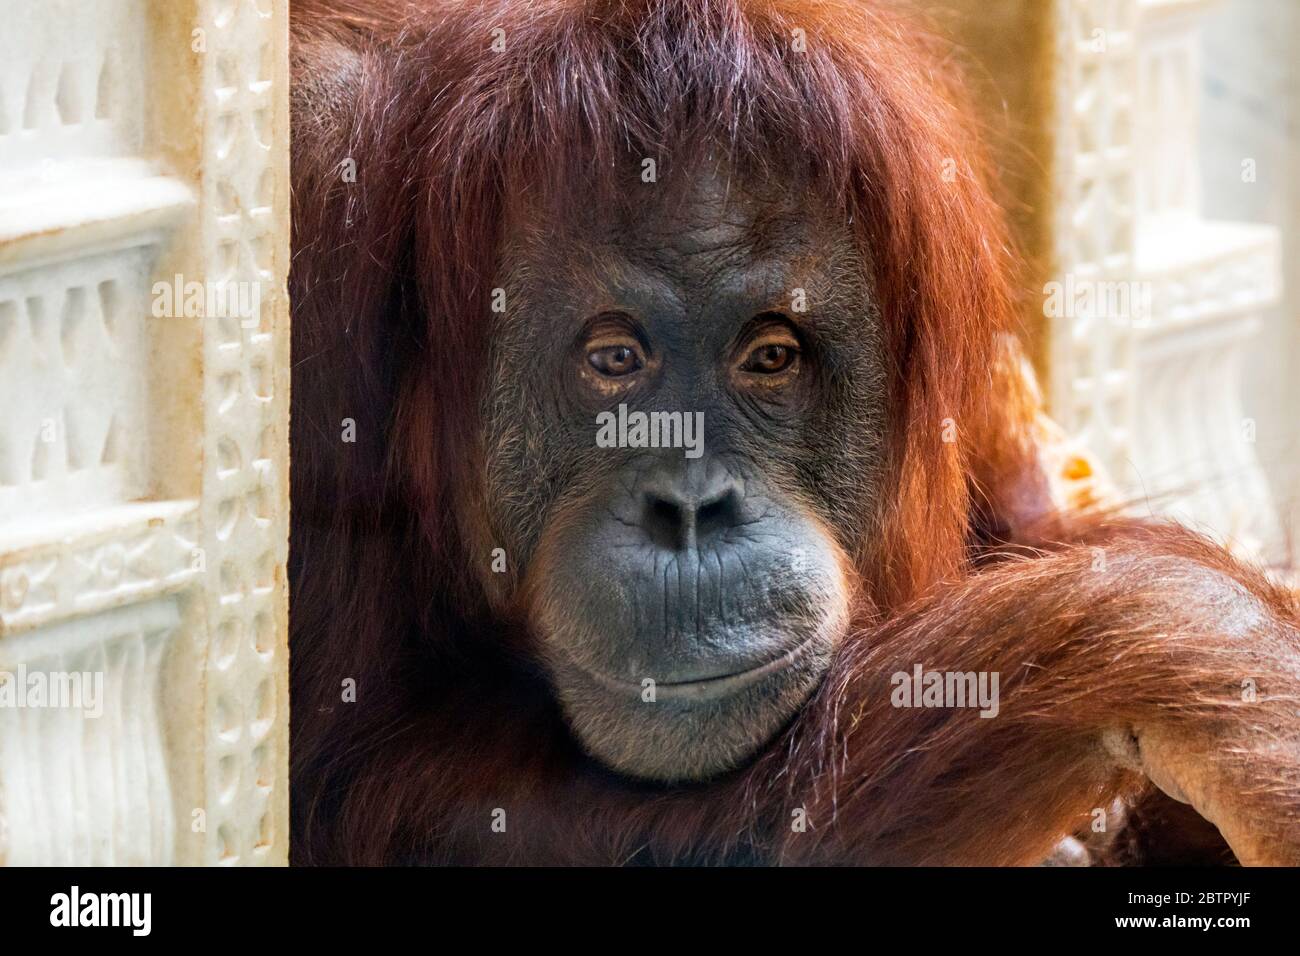 Retrato de cerca de Sumatra orangutan (Pongo abelii) mujer en el zoológico, nativa de la isla Indonesia de Sumatra Foto de stock